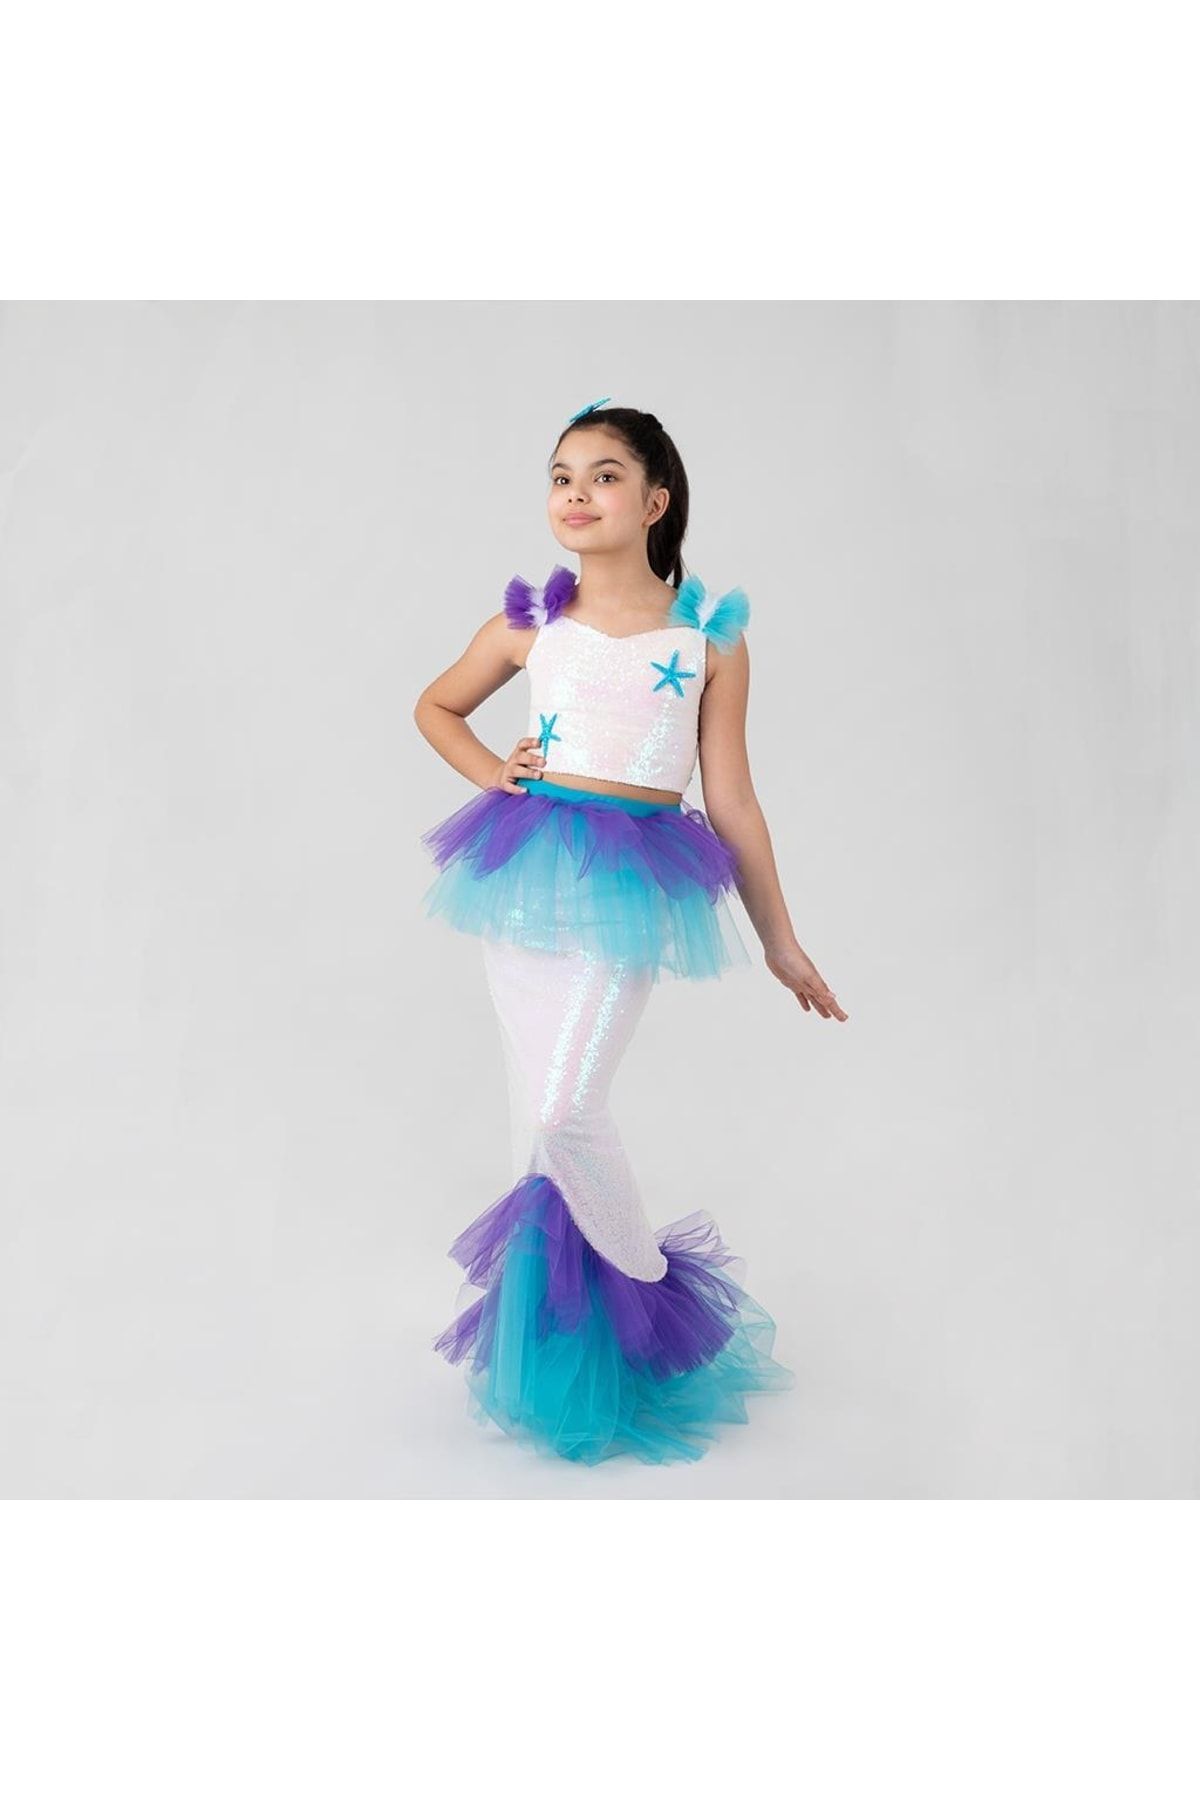 Mashotrend Mashokids Özel Üretim Deniz Kızı Kostümü - Payetli Kostüm - Deniz Kızı Kuyruğu Kostüm